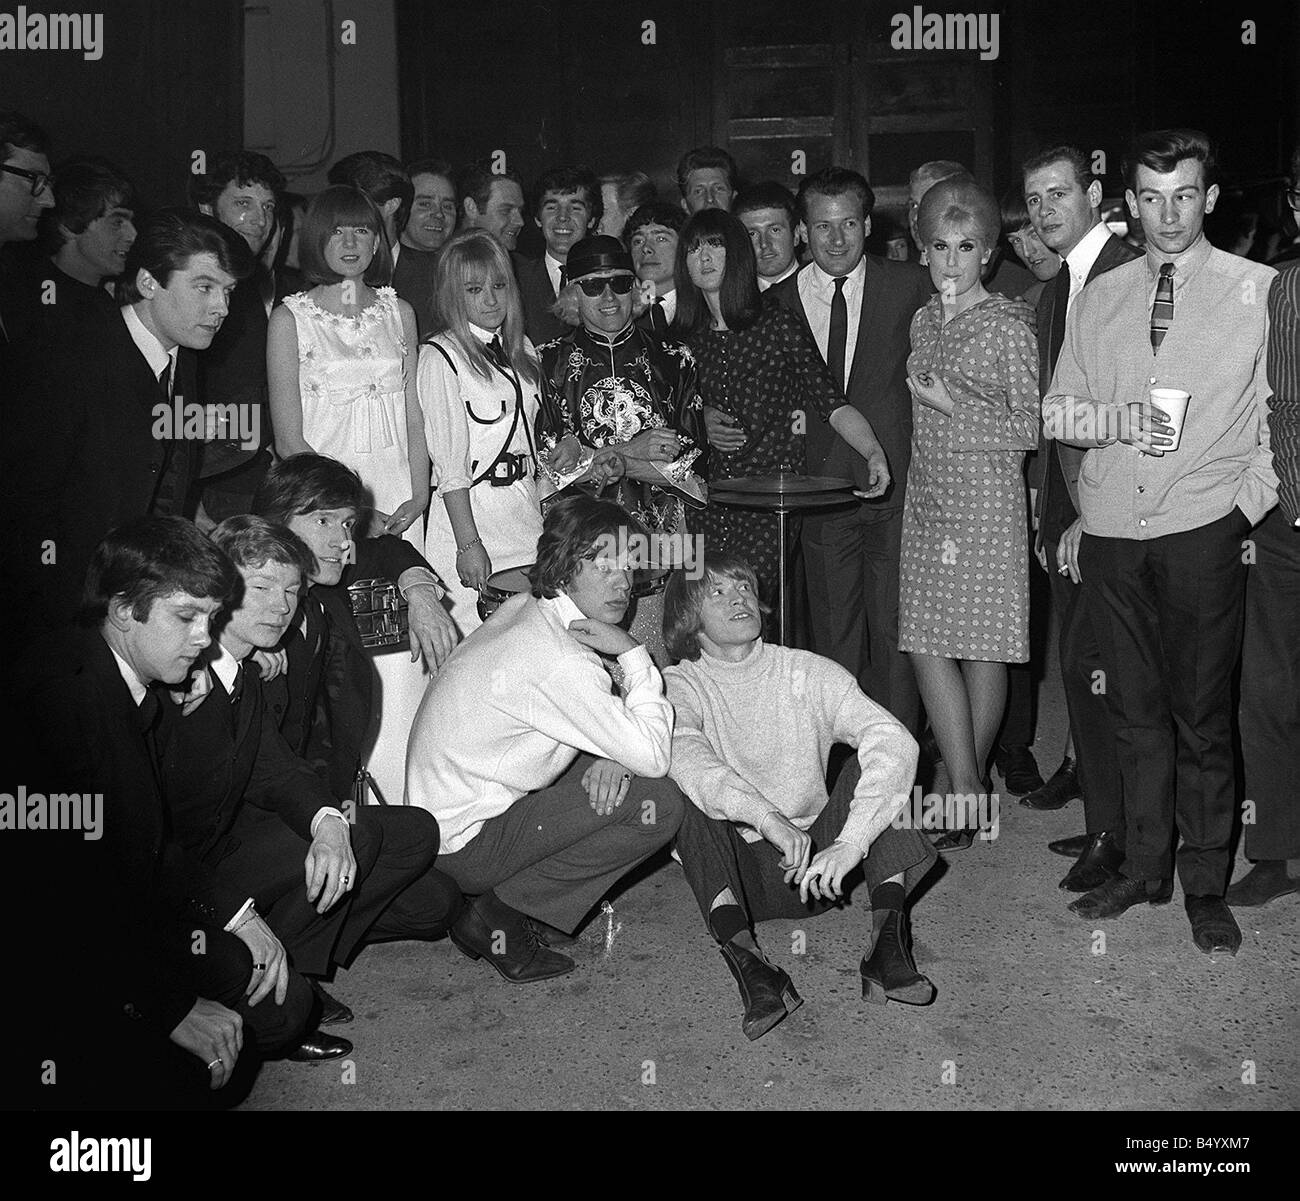 Ein oder zwei berühmte Namen aus der Welt der Popmusik zusammen nach einem  Konzert im Jahr 1965 fotografiert sie umfassen, Mick Jagger und Brian Jones  von den Rolling Stones, die gerade auf